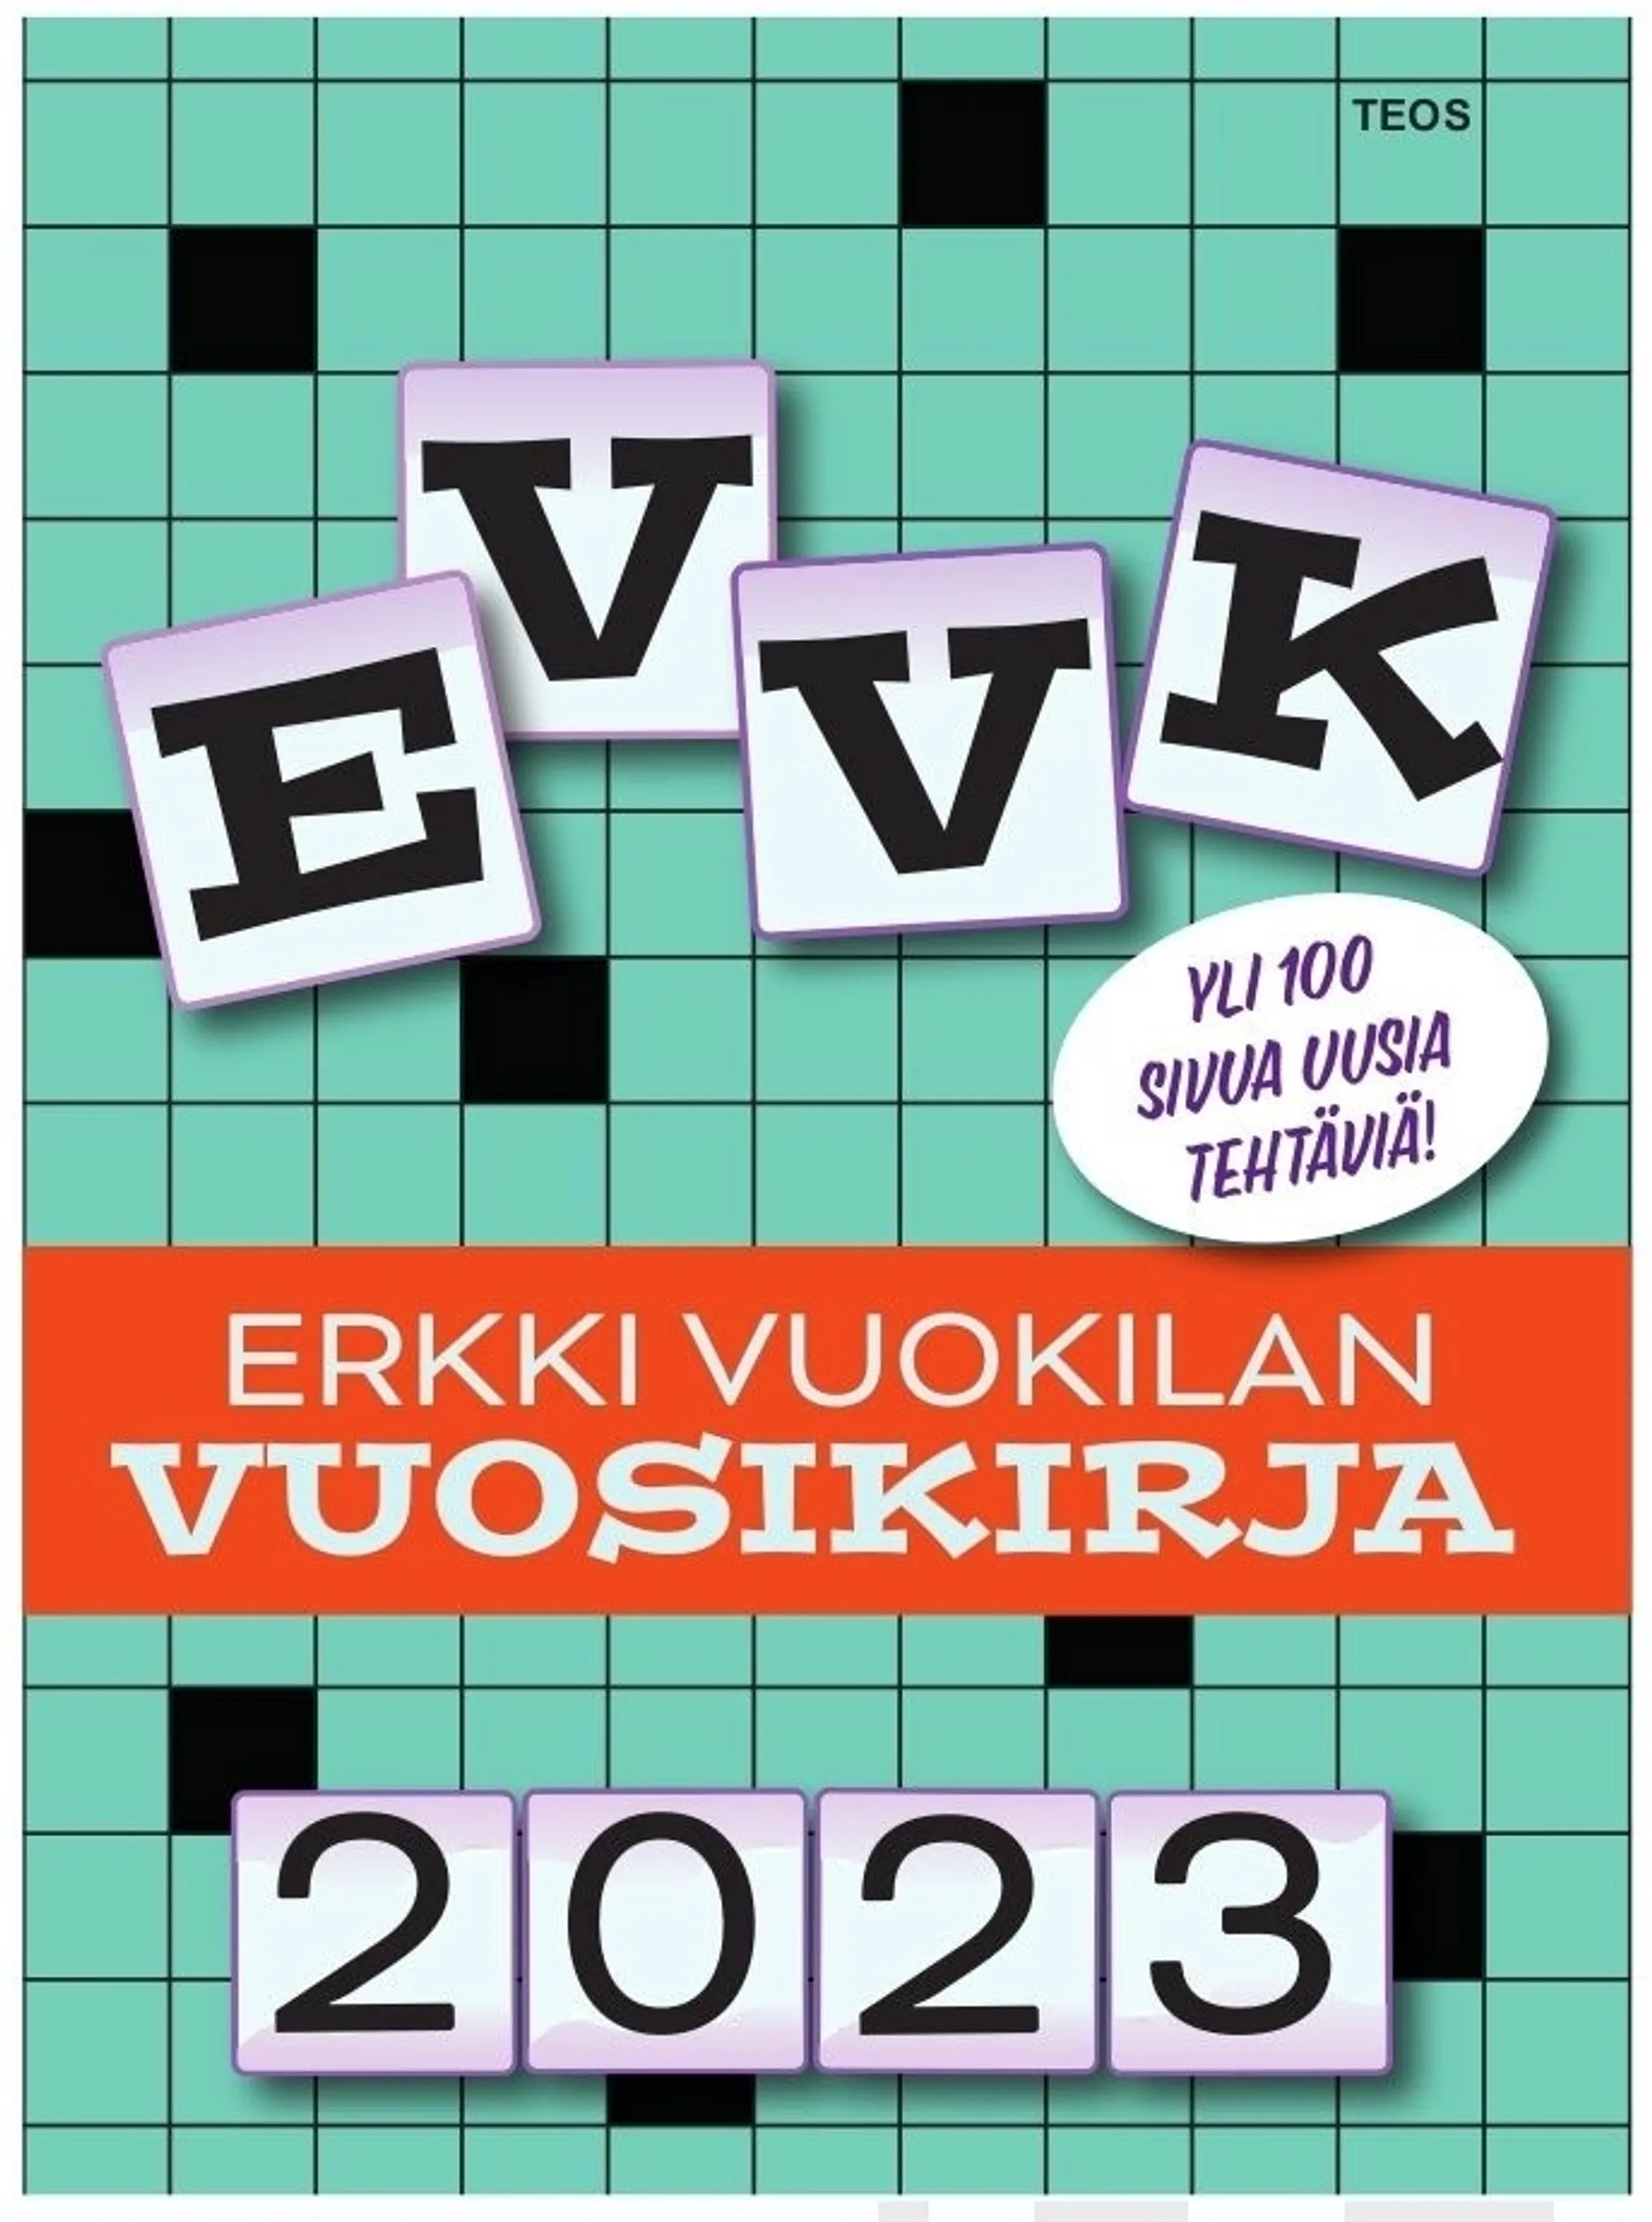 Vuokila, EVVK, Erkki Vuokilan vuosikirja 2023